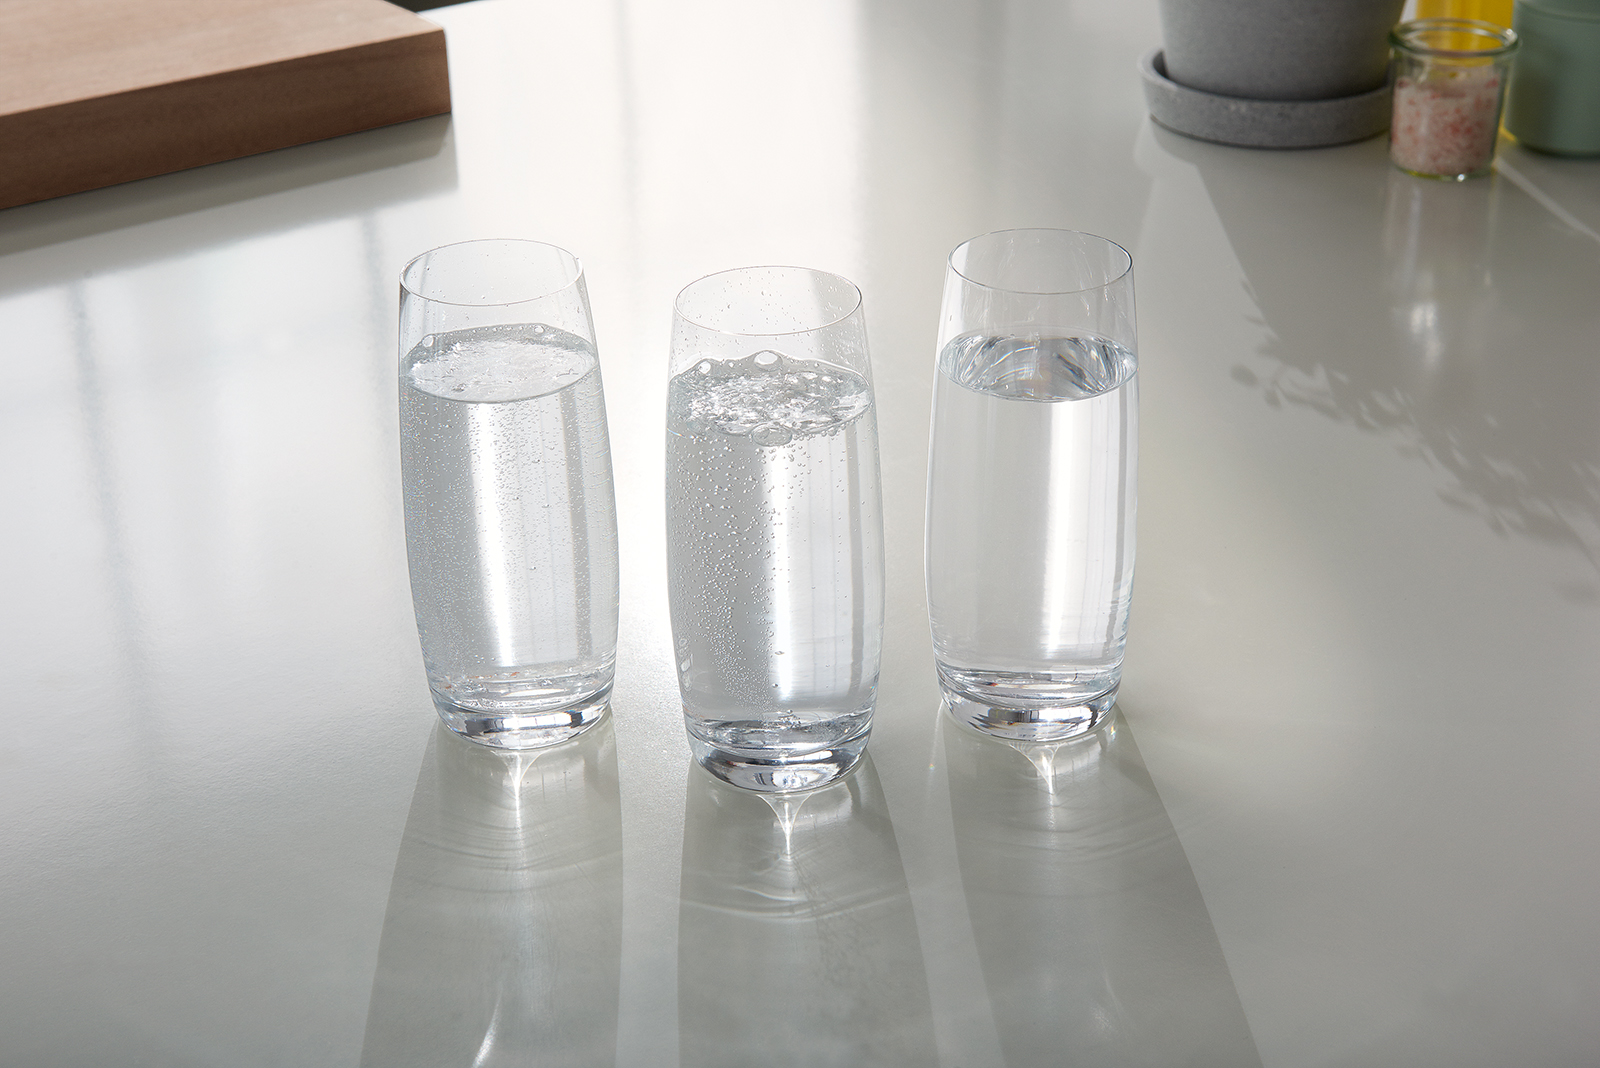 Drei gefüllte, durchsichtige Wassergläser mit unterschiedlich stark gesprudeltem Wasser. 